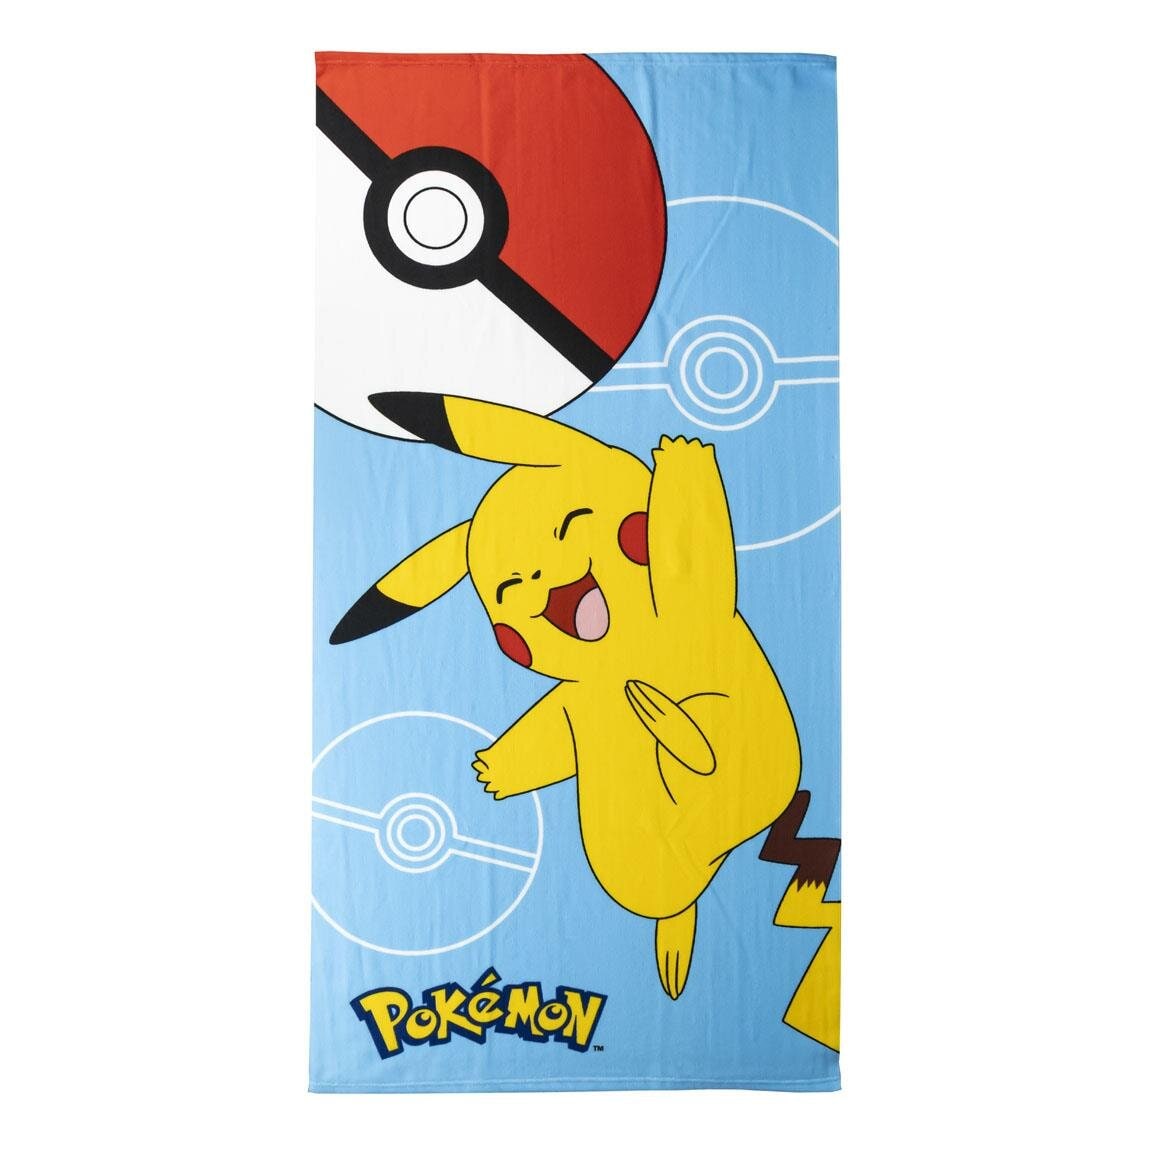 Pokémon - Pikachu Badetuch 70 x 140 cm